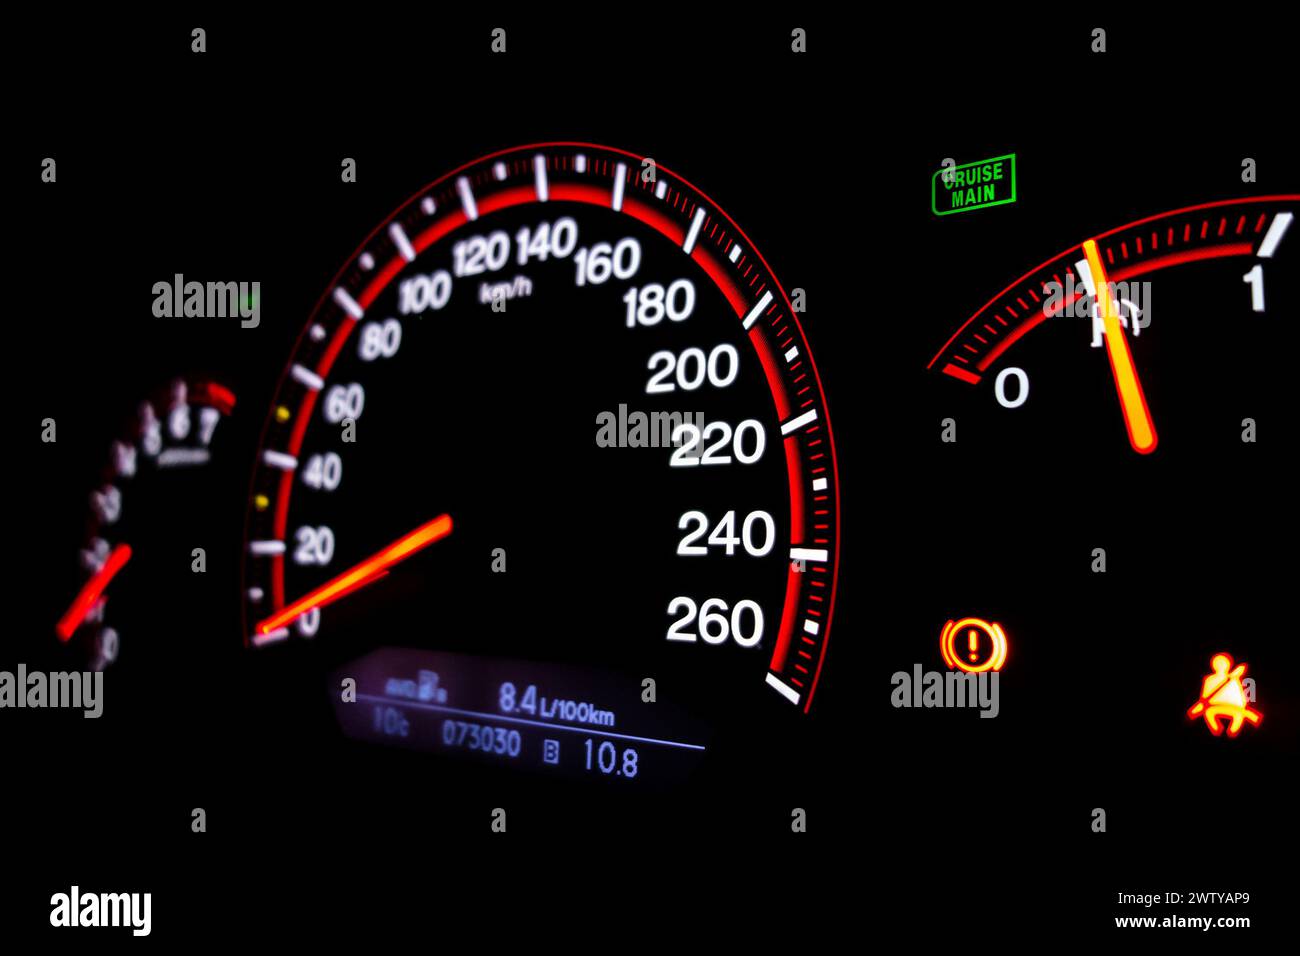 Tableau de bord de voiture moderne avec compteur de vitesse et consommation Banque D'Images